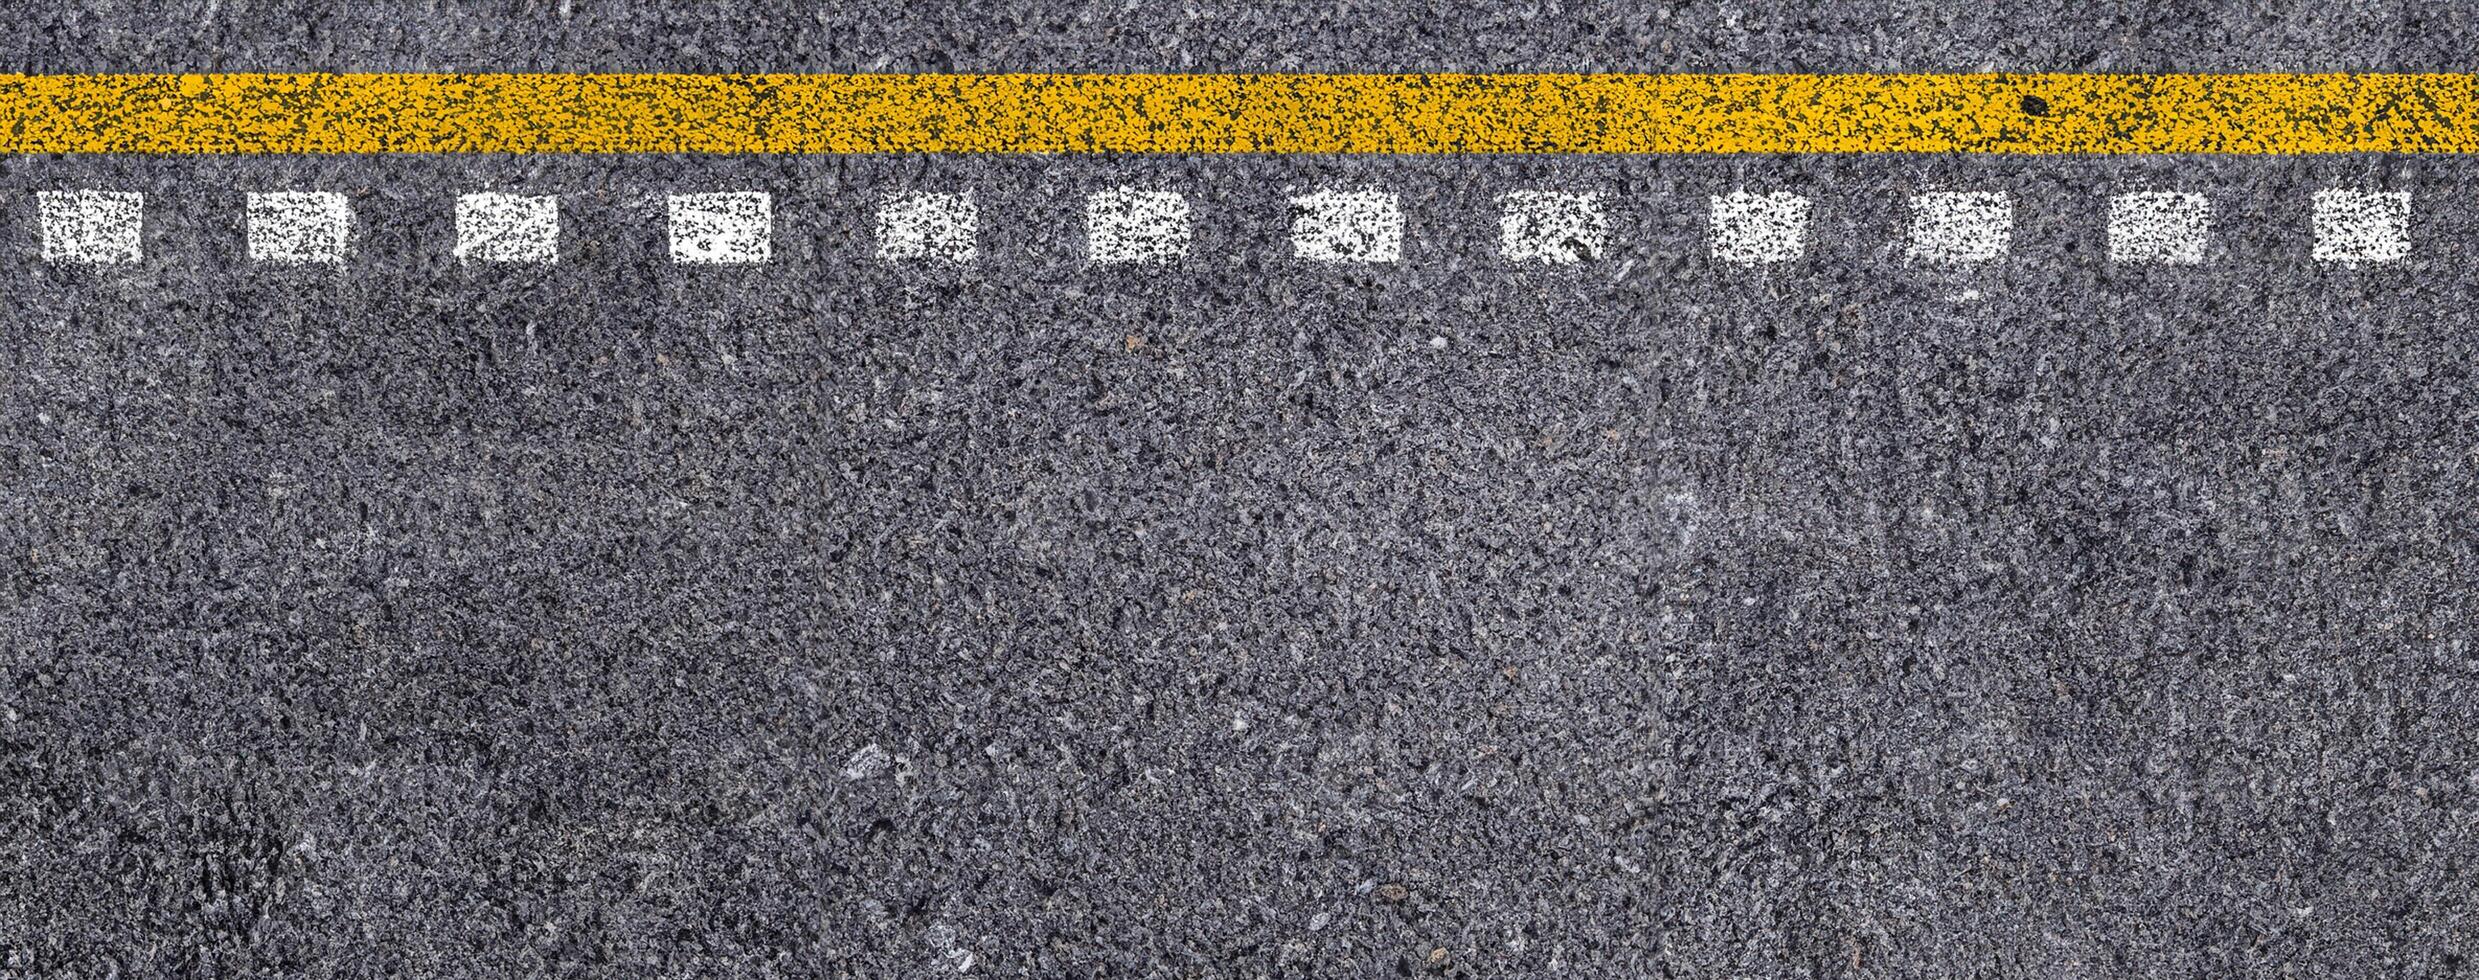 topp se av dubbel- gul och vit rader på asfalt väg textur bakgrund. foto